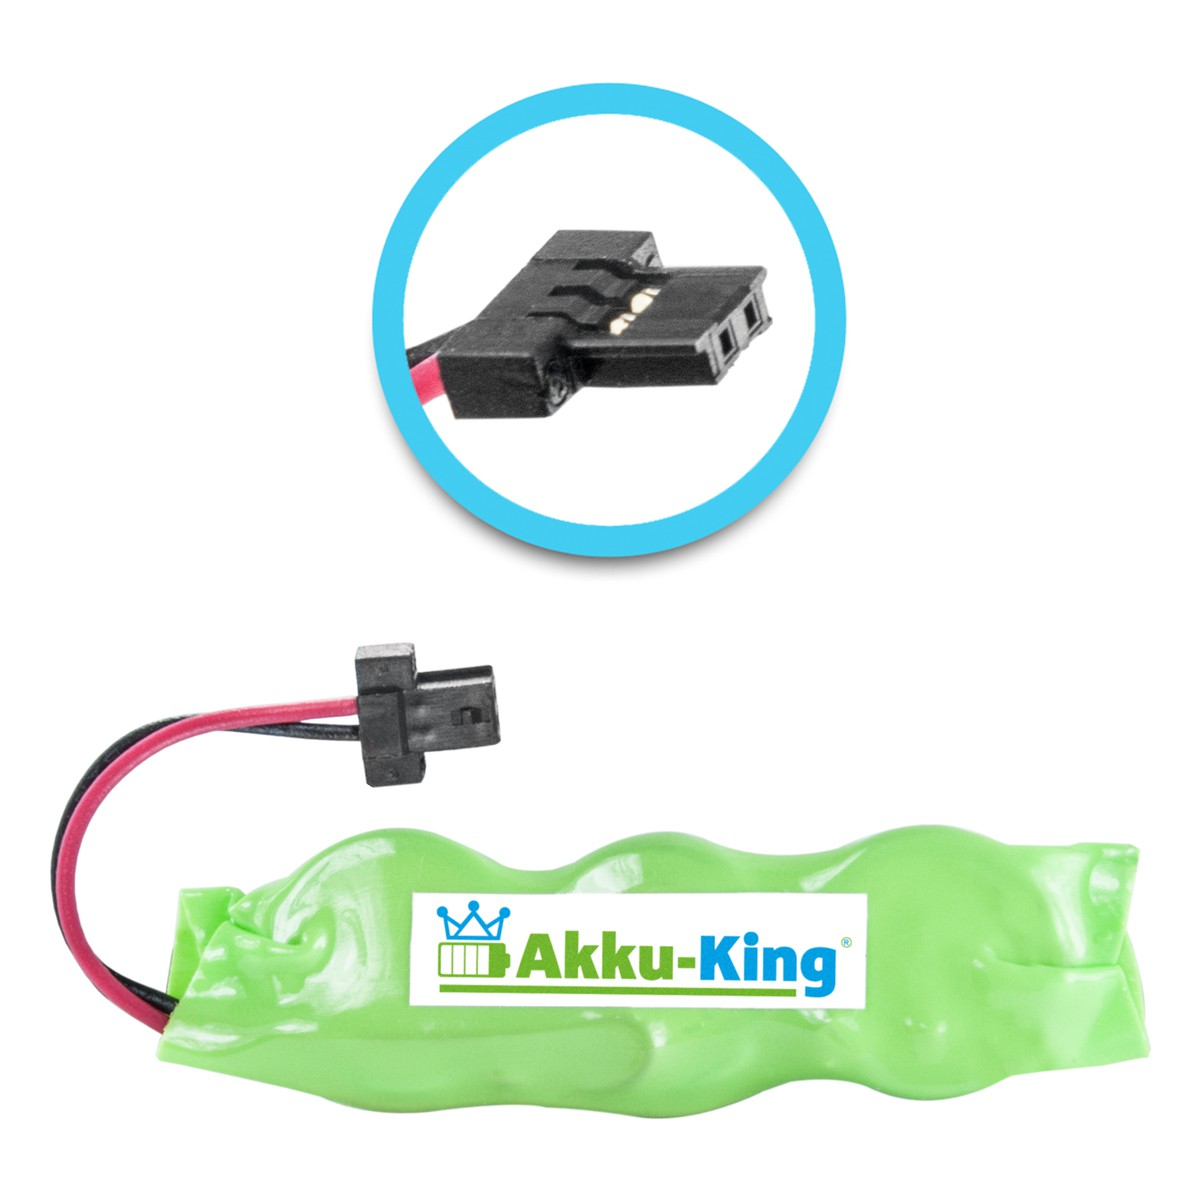 20mAh kompatibel Akku mit Ni-MH Volt, MC1000 3.6 Geräte-Akku, Symbol AKKU-KING